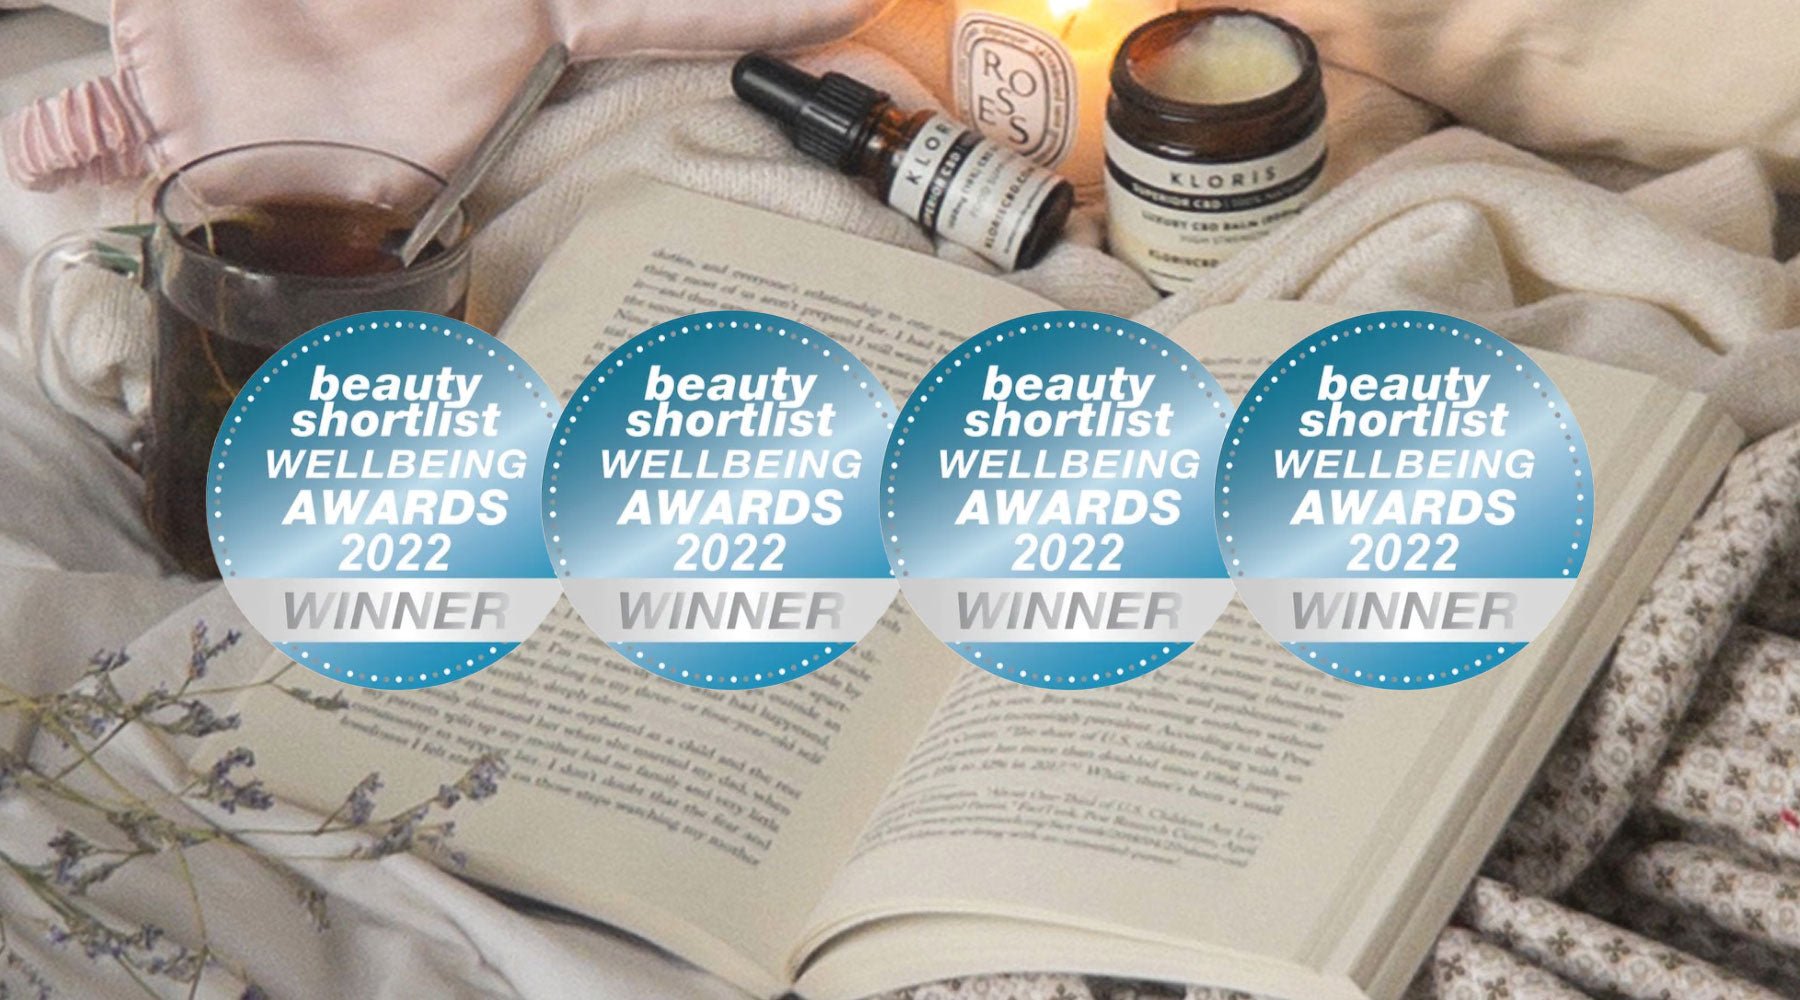 4x Beauty Shortlist Wellbeing Award Wins! - KLORIS